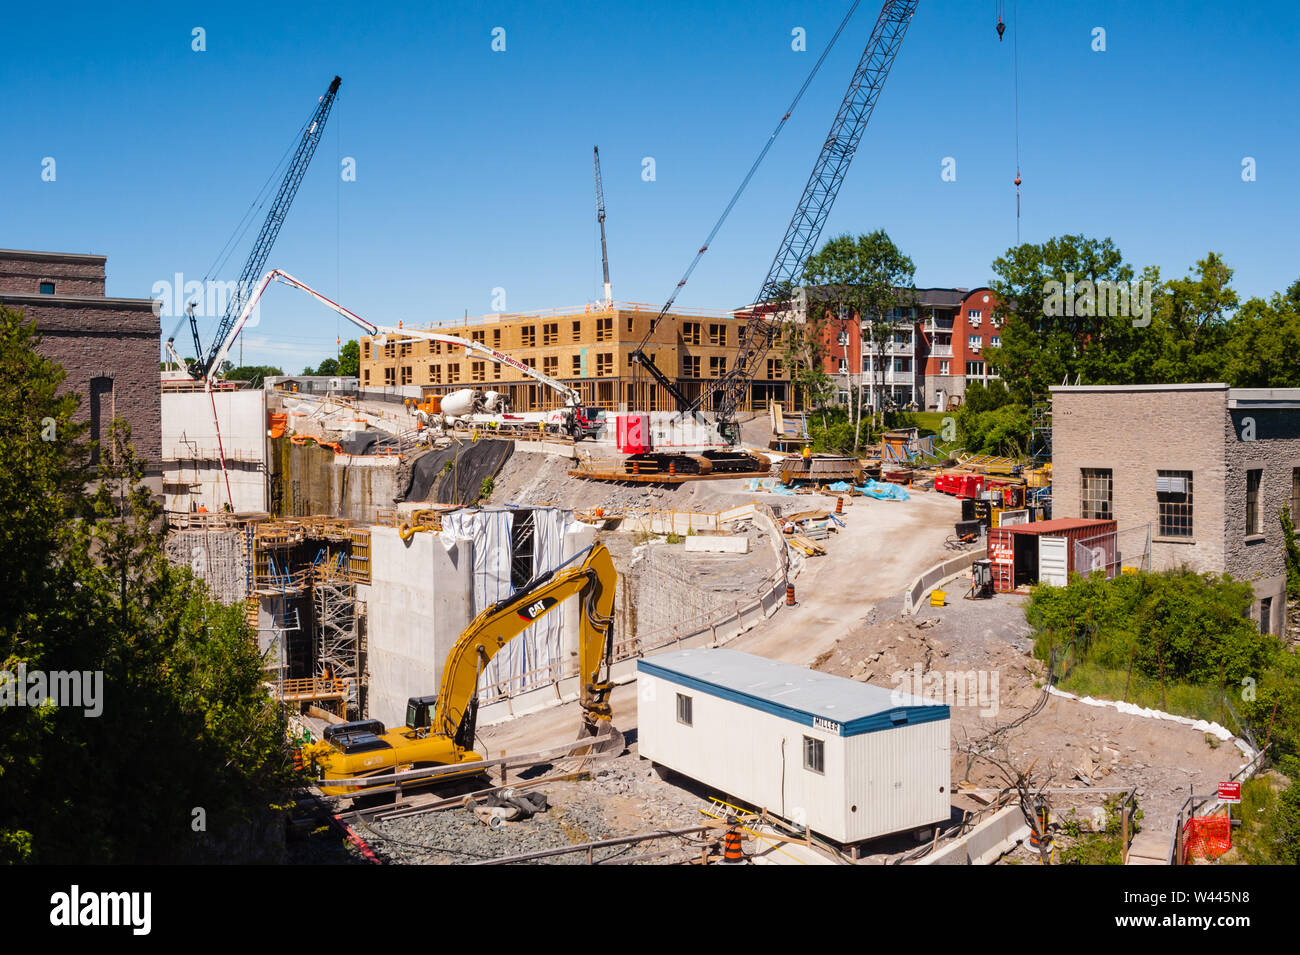 CAMPBELLFORD, Ontario, Canada - 21 giugno 2018: La Ranney cade stazione di generazione subisce grandi lavori di costruzione per aggiornare la sua capacità. Foto Stock